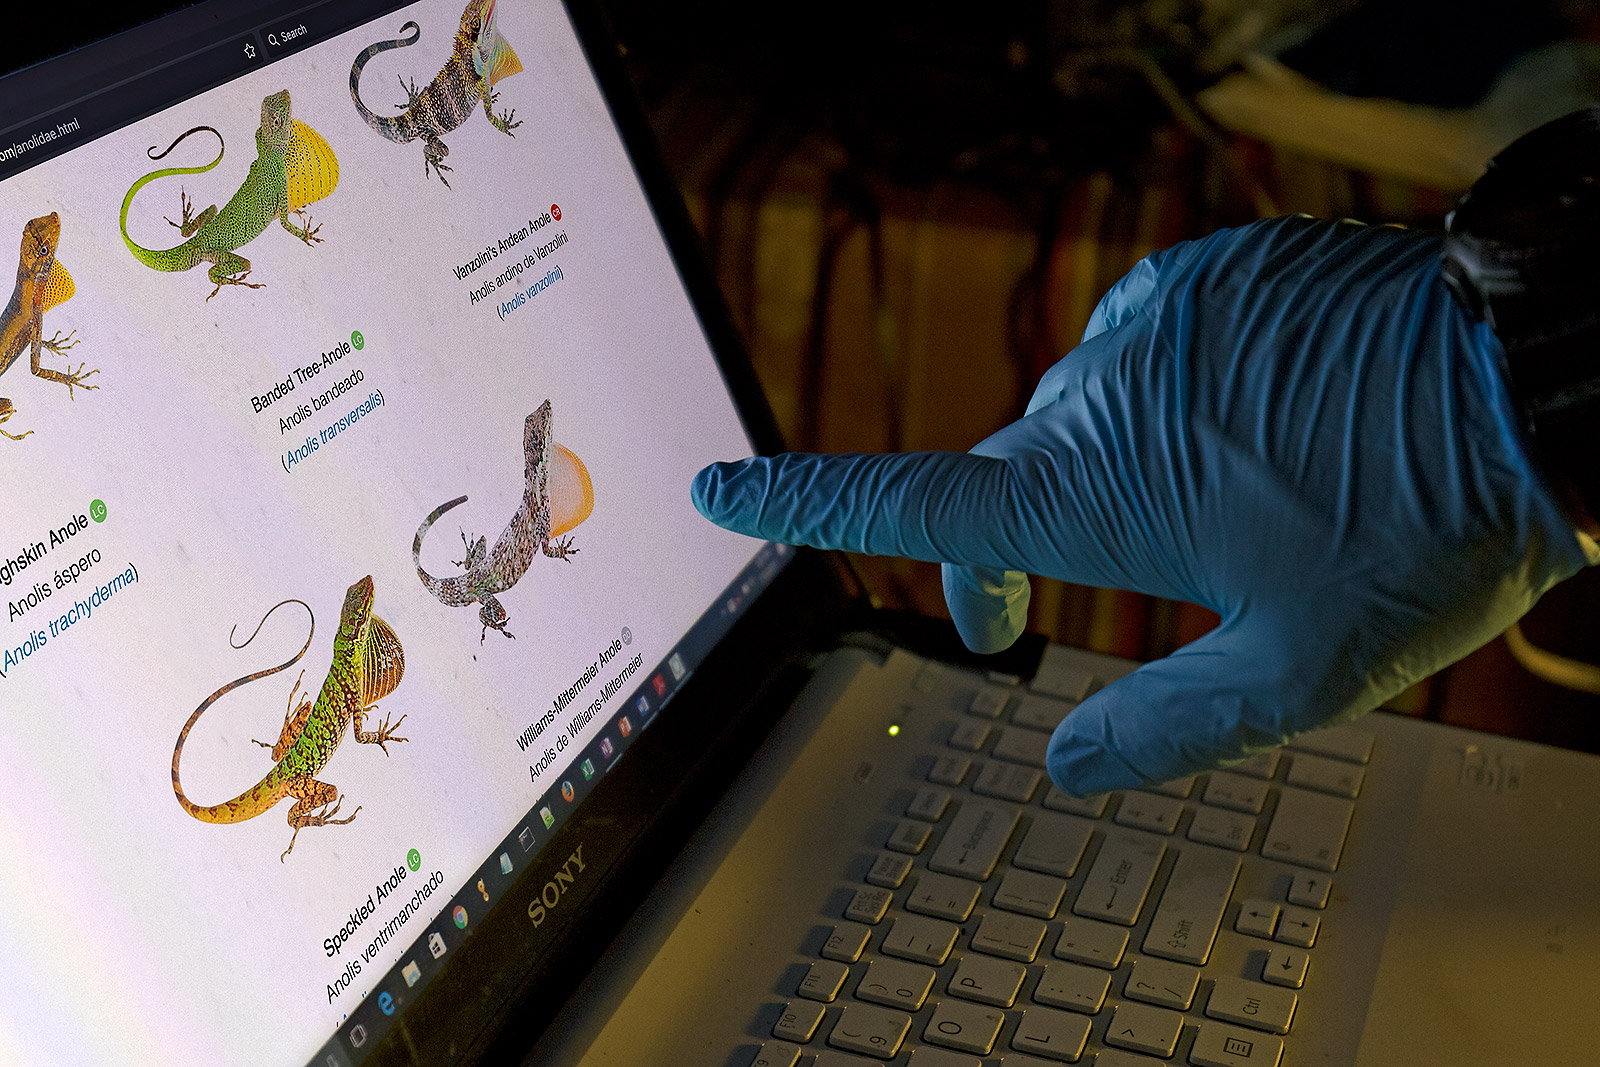 Laptop screen showing the website of the Reptiles of Ecuador book